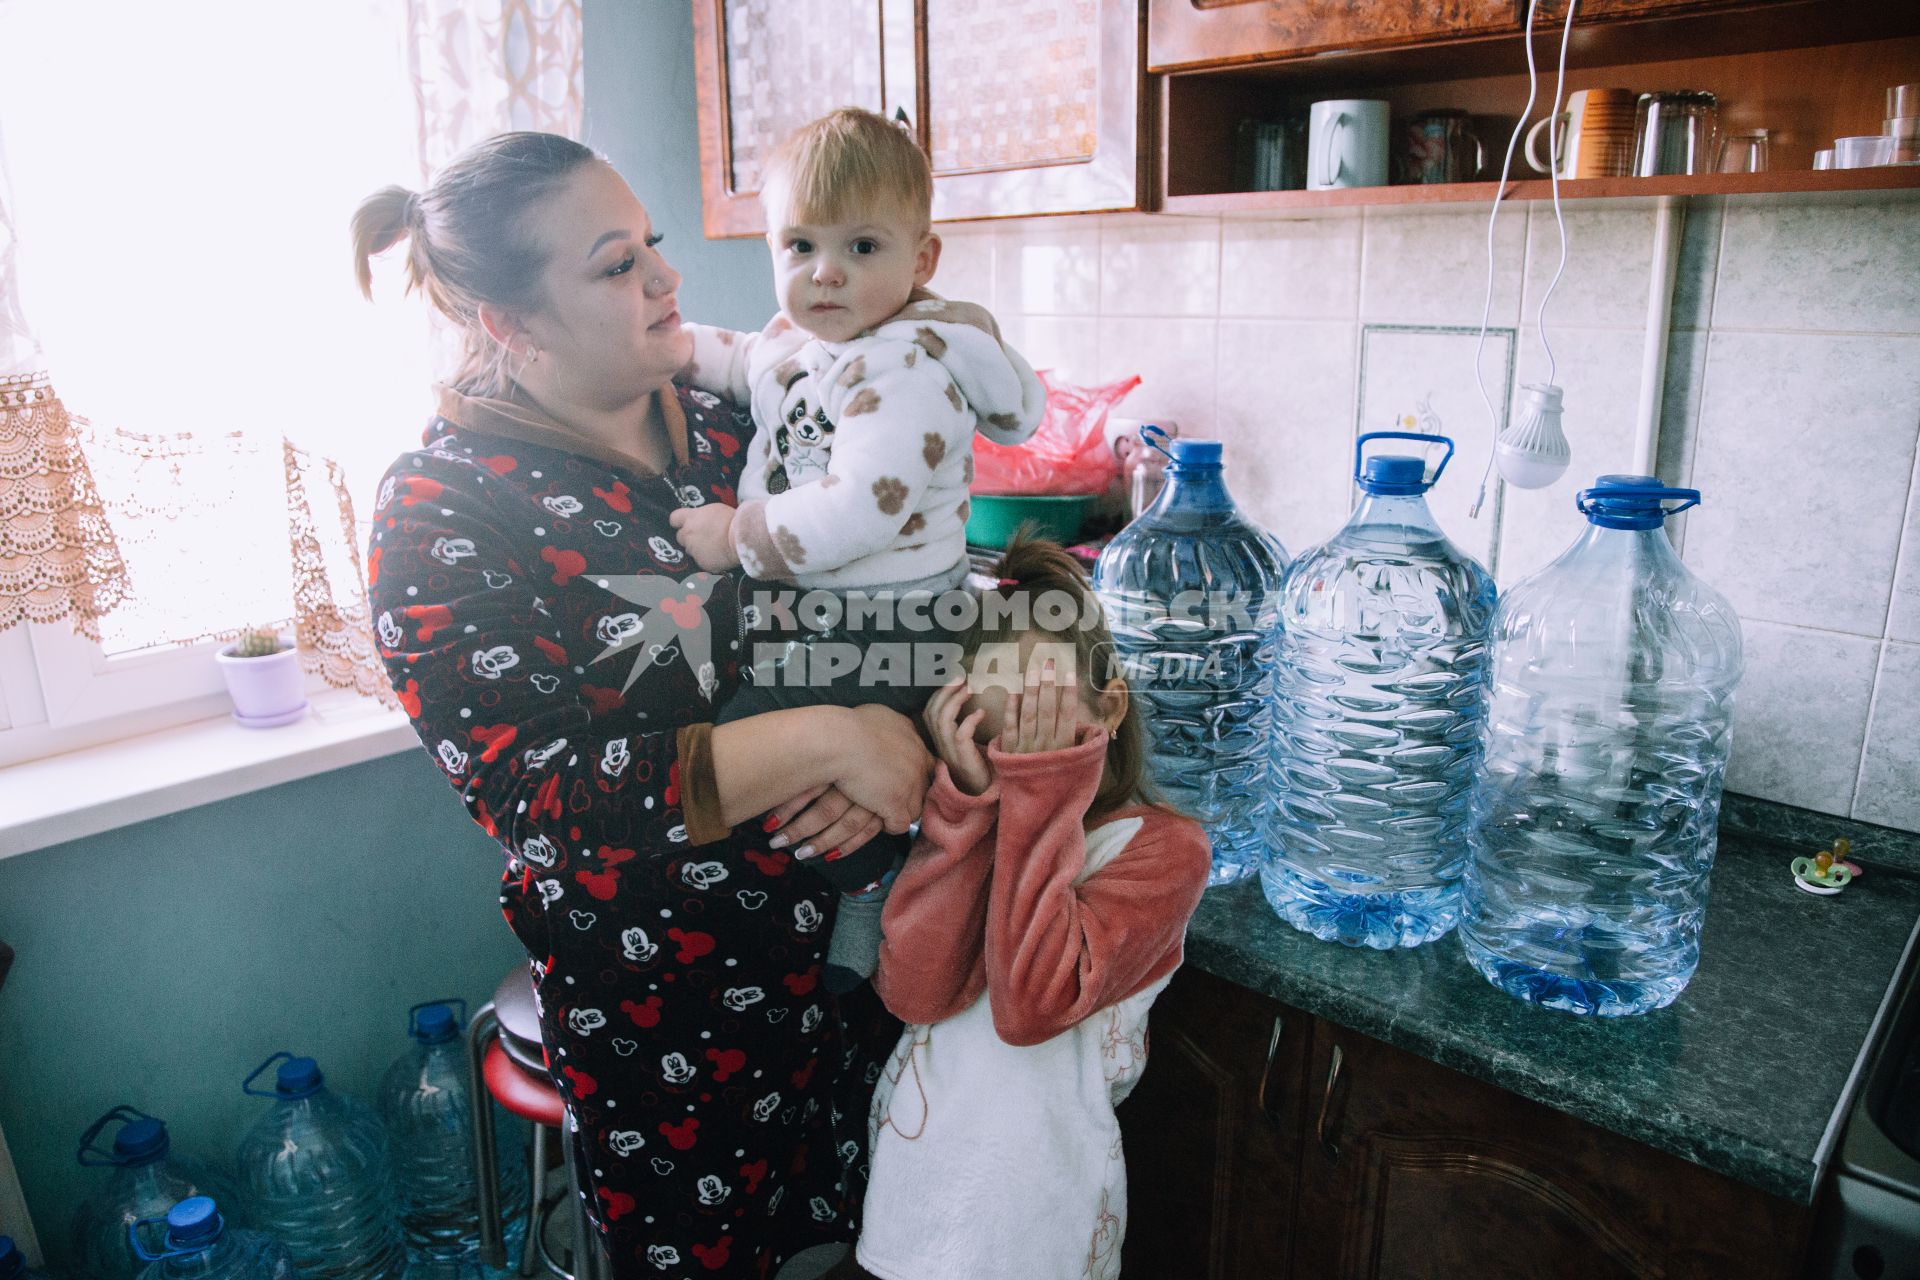 Жители Донецка живут без света и воды